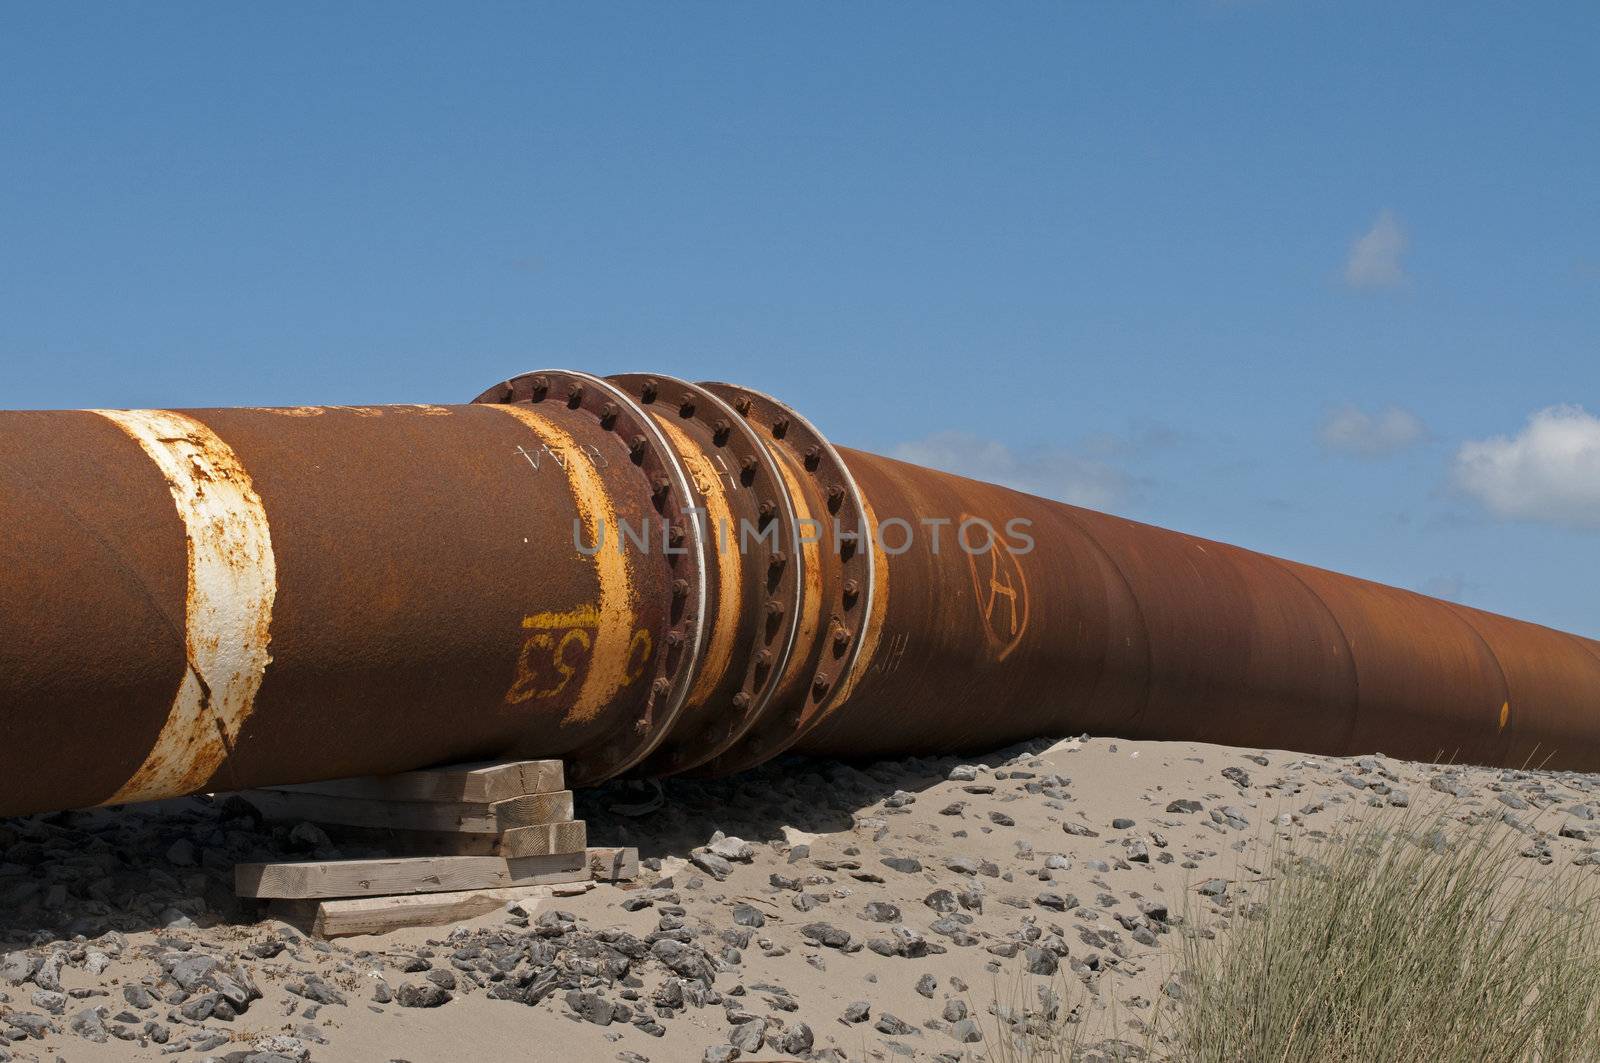 pipeline for transport